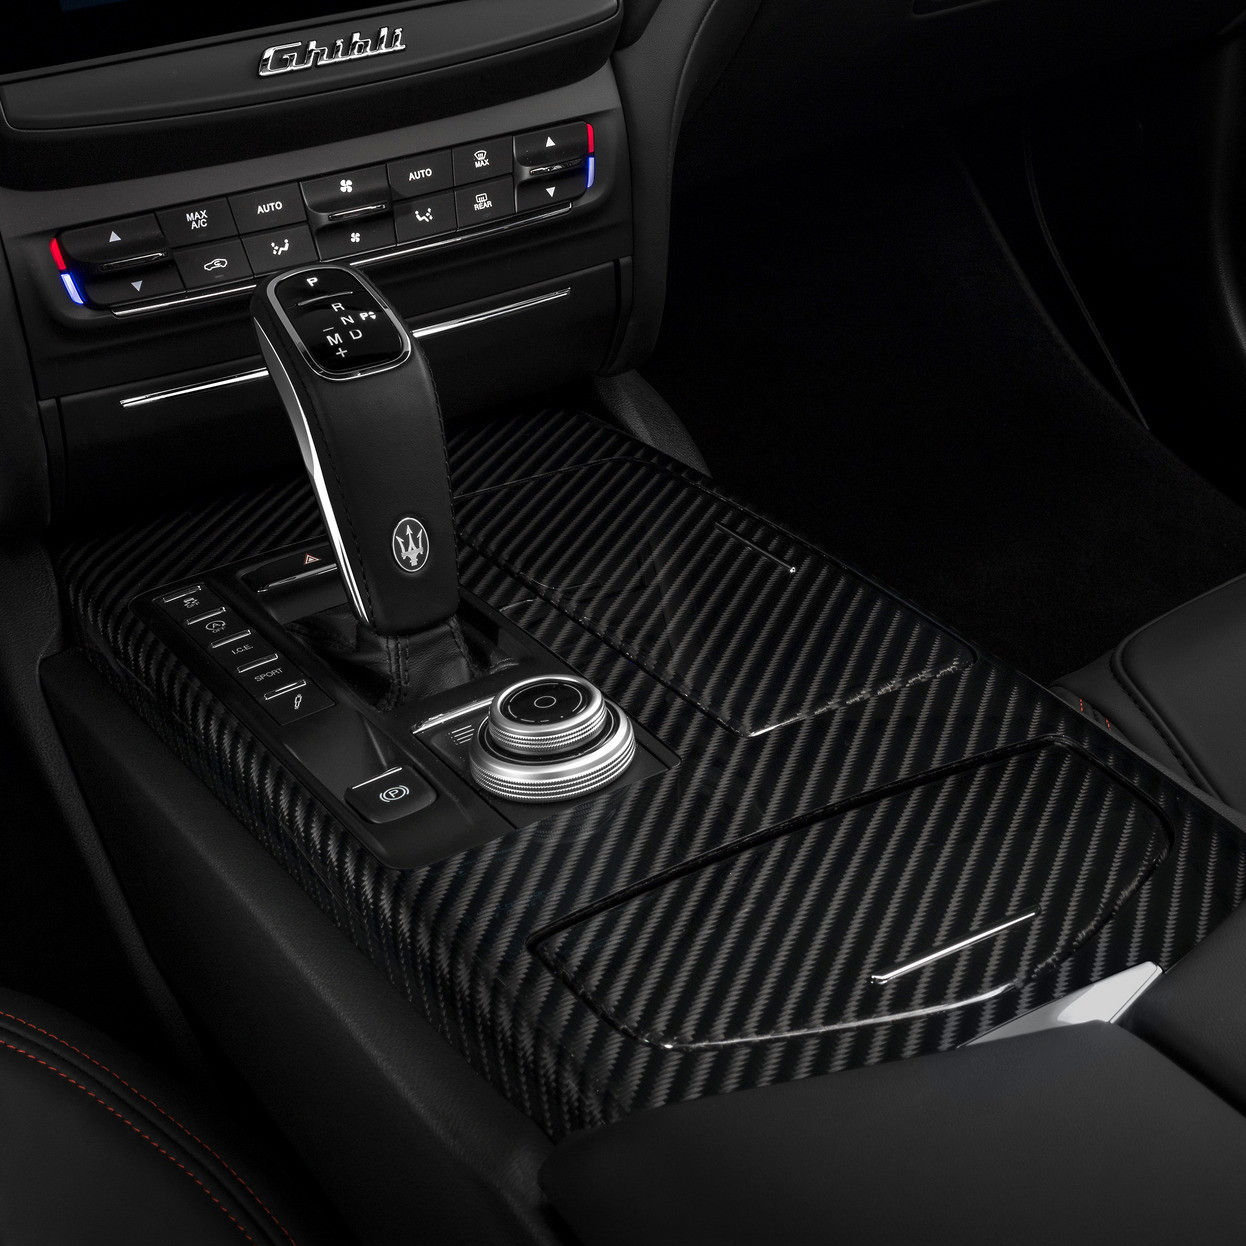 Maserati Ghibli Innenausstattung - Kupplung Detail - Automatikgetriebe